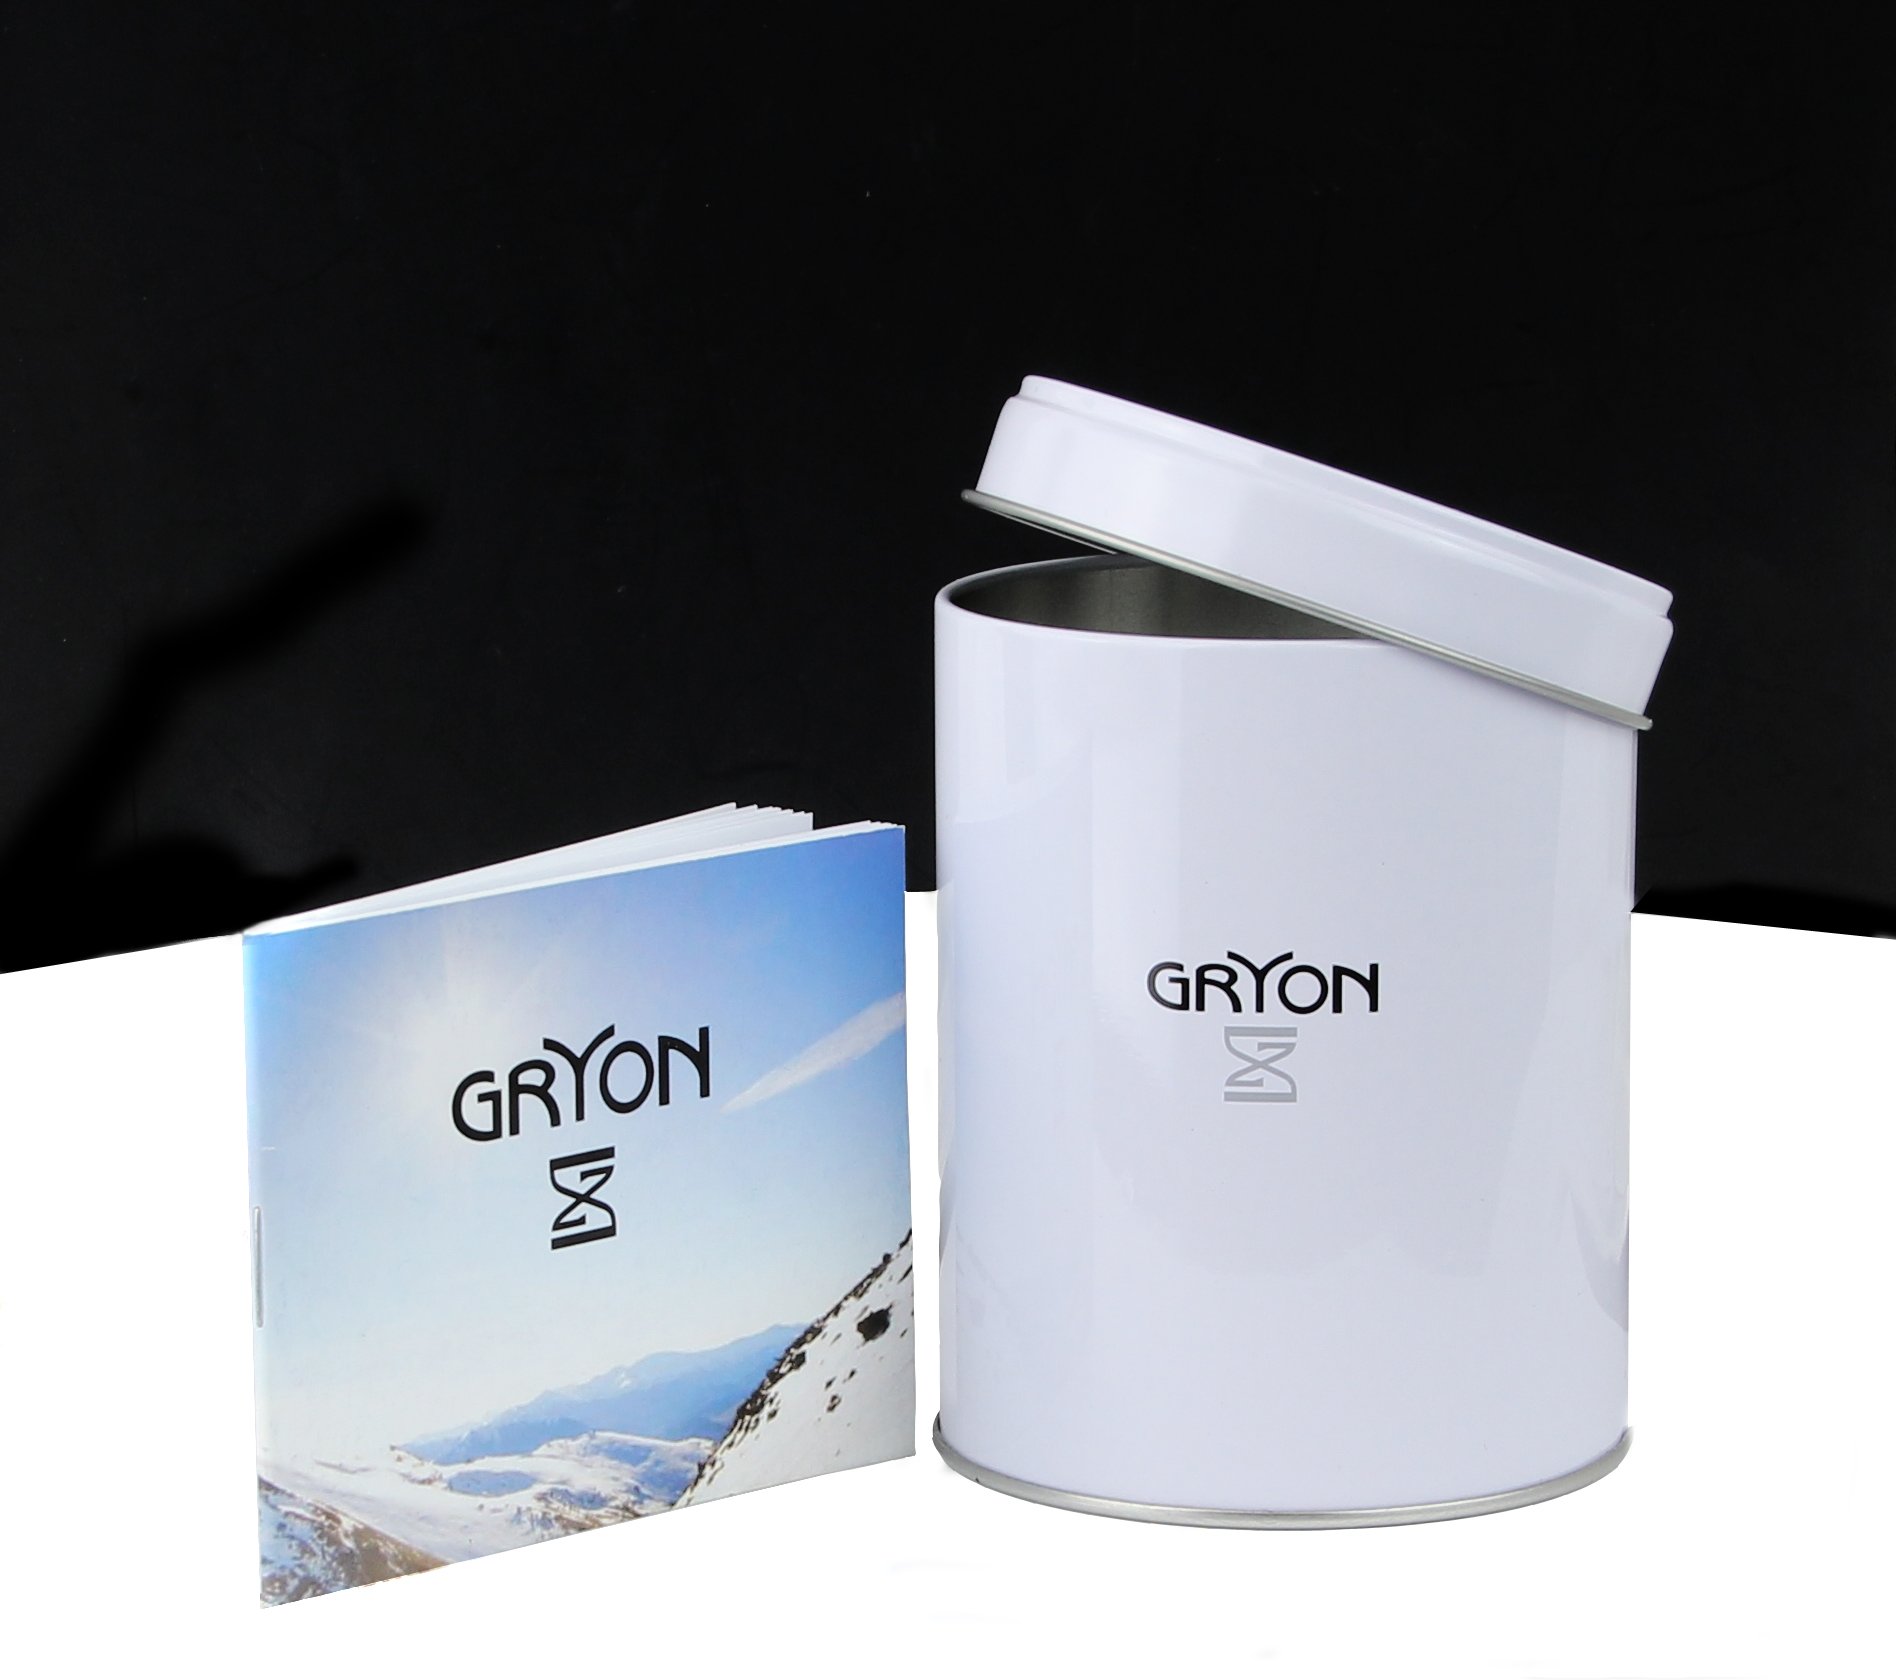 Фото часов Женские часы Gryon Classic G 603.11.33